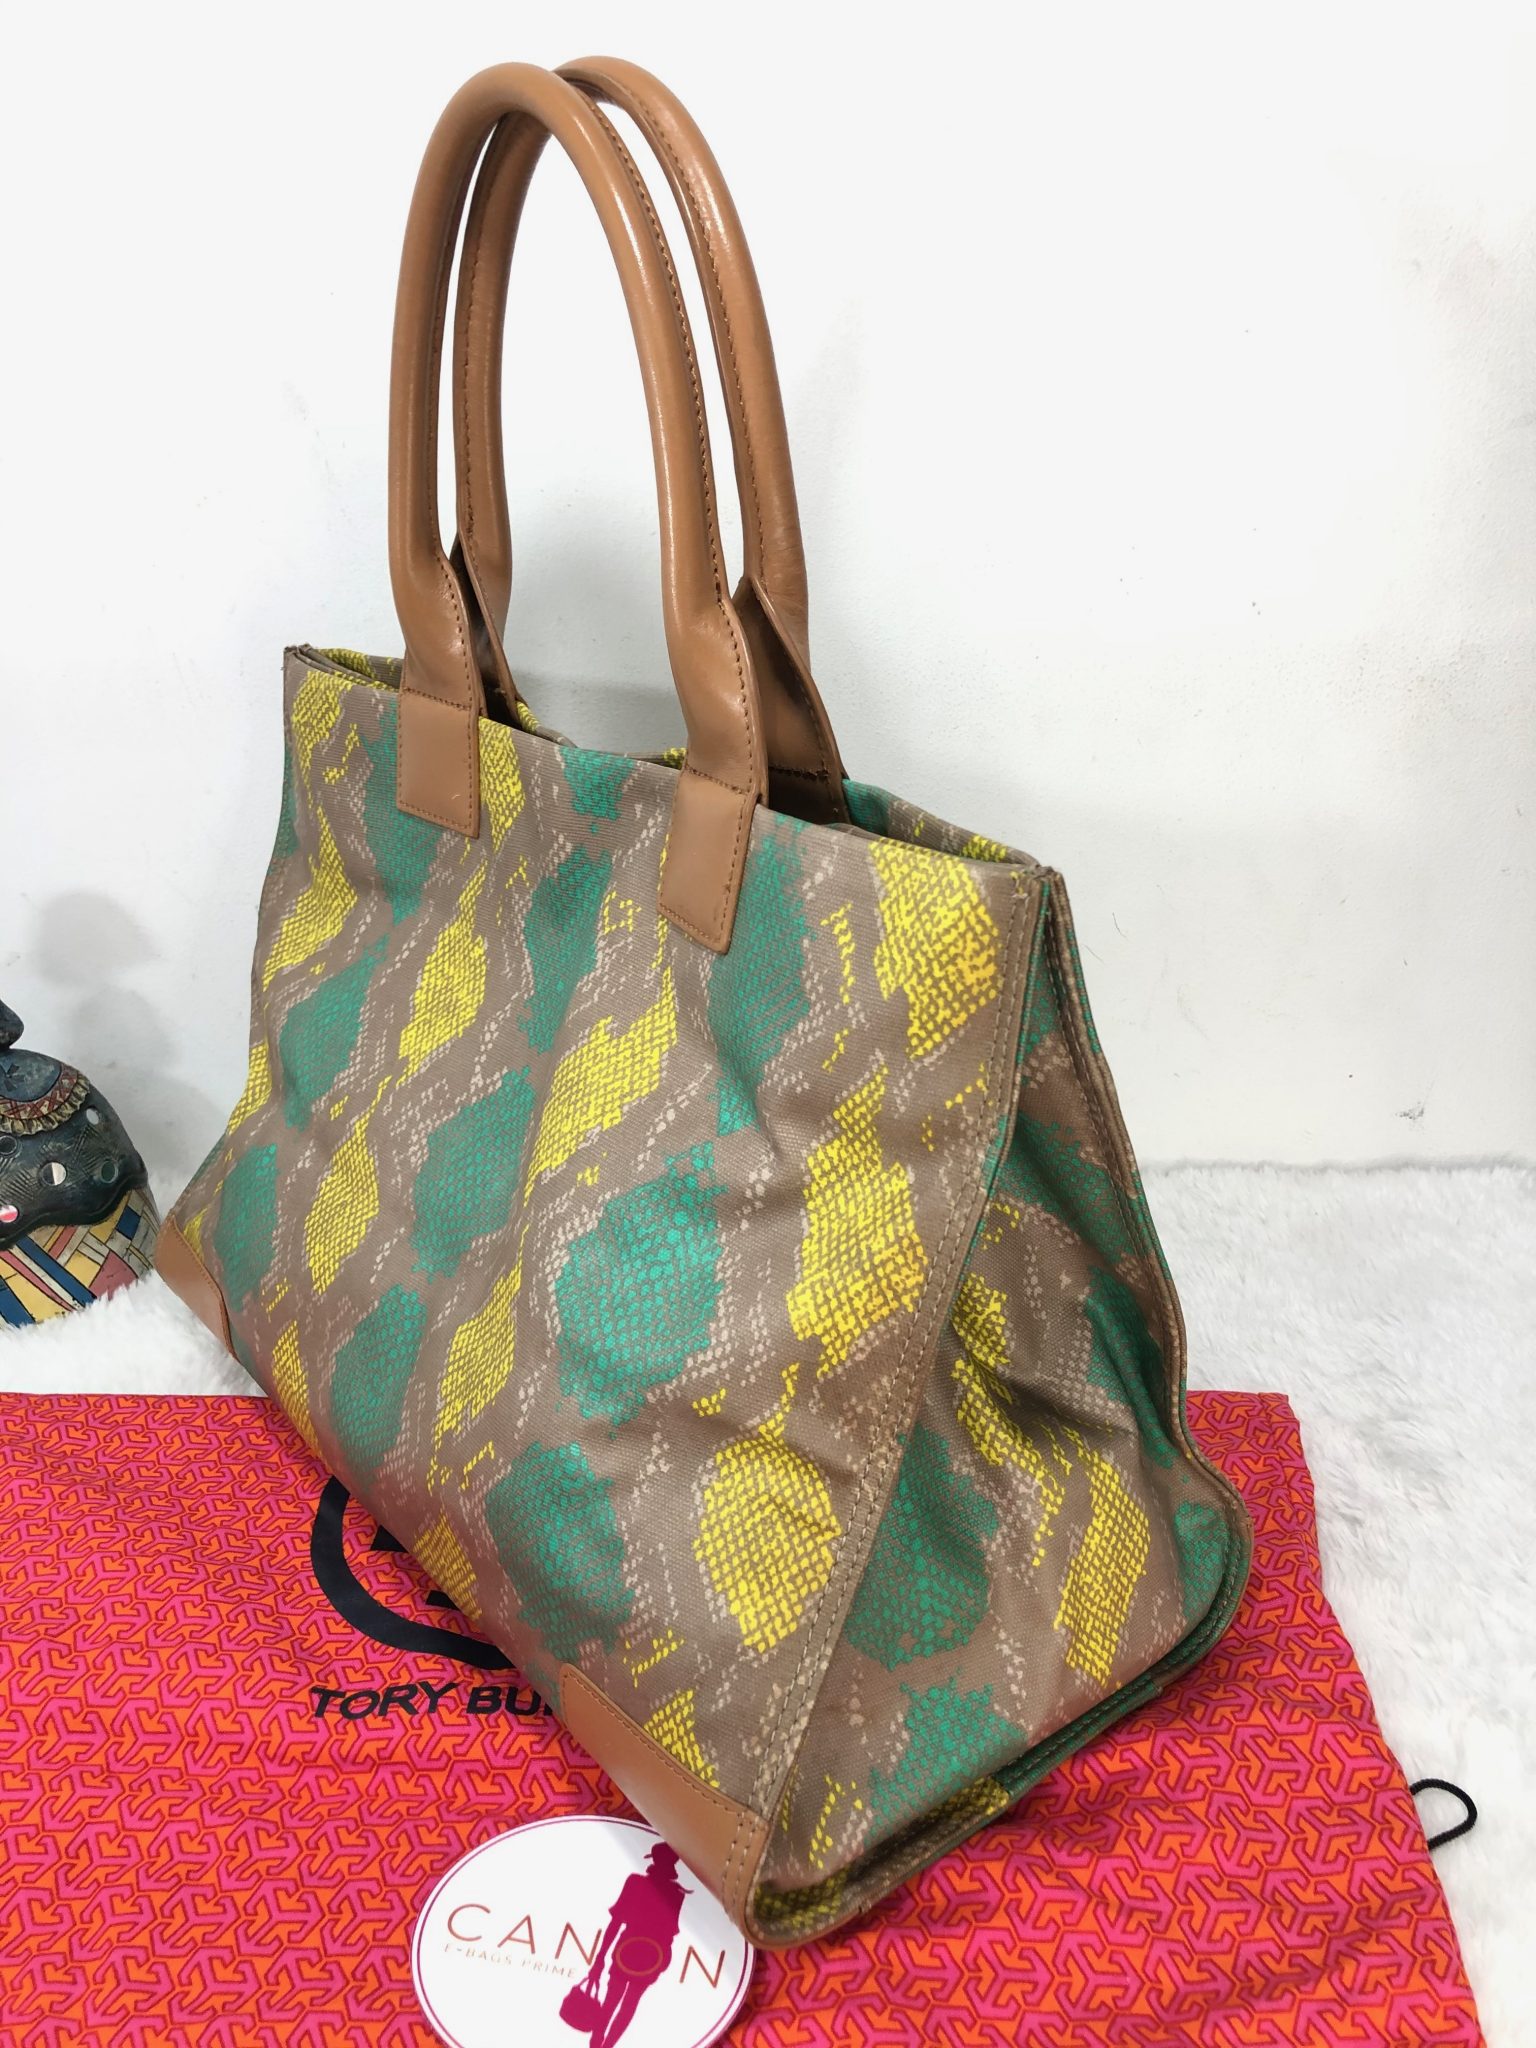 Tory Burch Ella Straw mini tote bag for Women - Multicolored in UAE